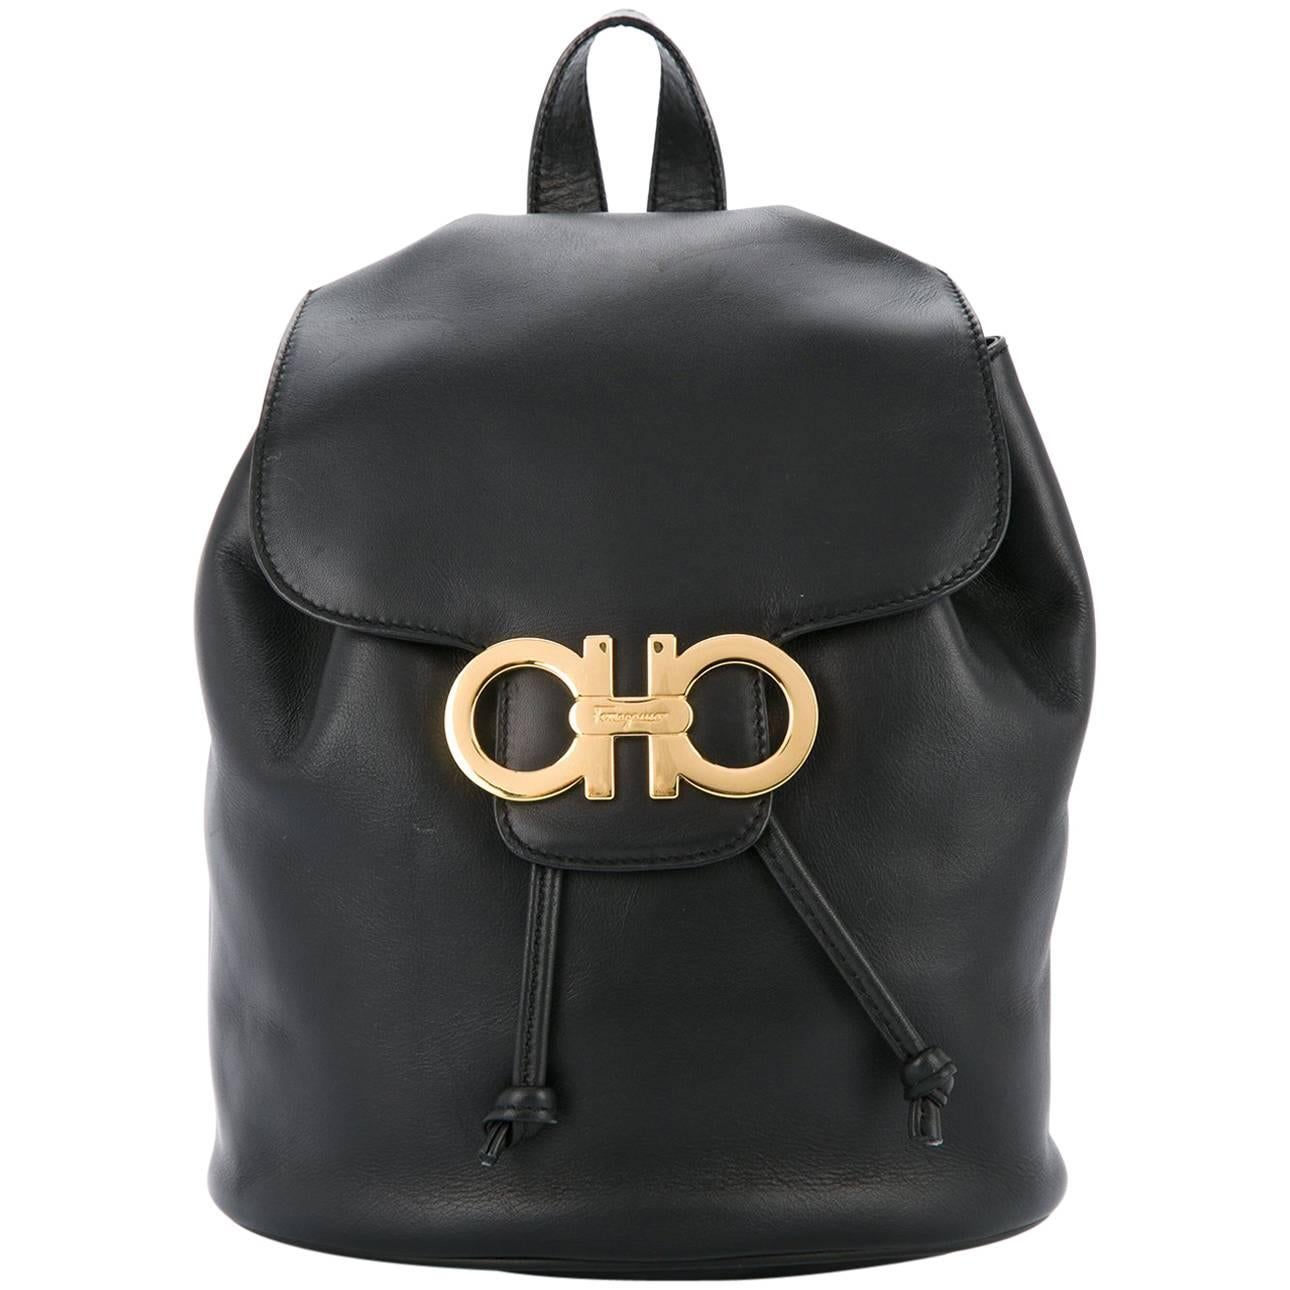 Salvatore Ferragamo Black Leather Drawstring Bucket Backpack Shoulder Flap Bag